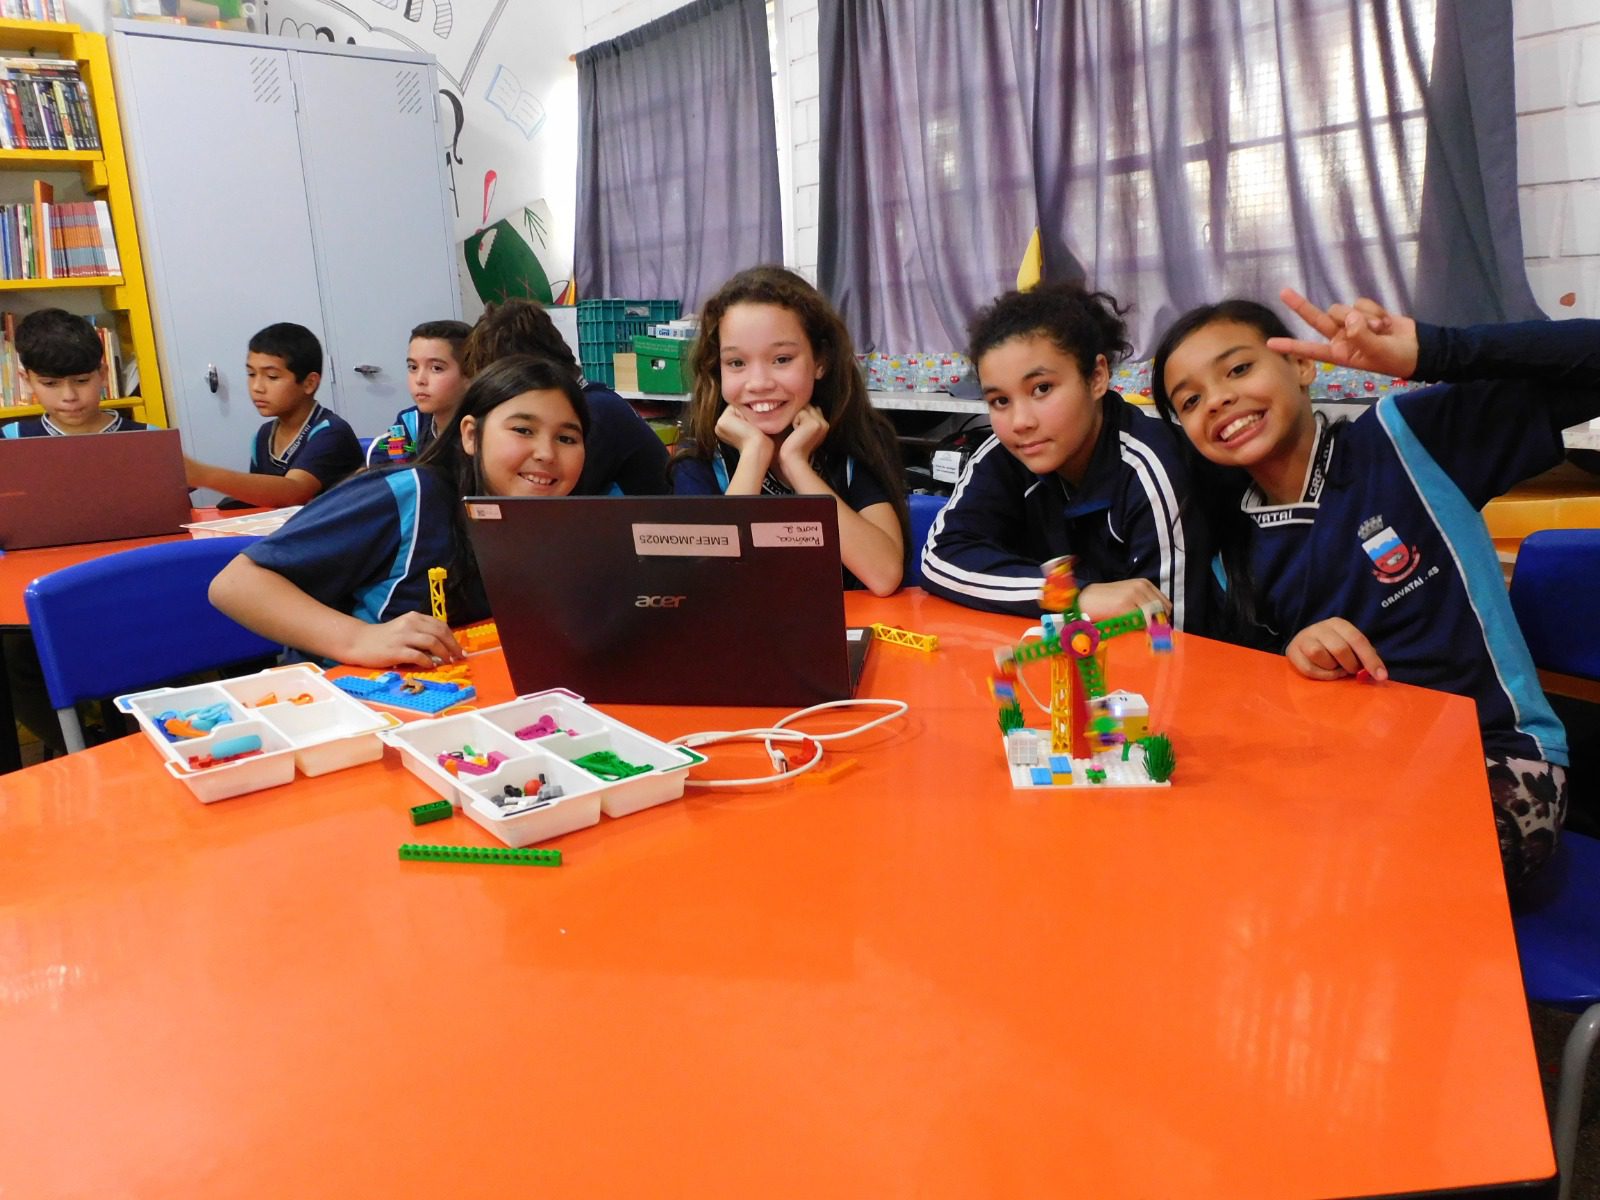 Prefeitura segue investindo em tecnologia na educação em Gravataí